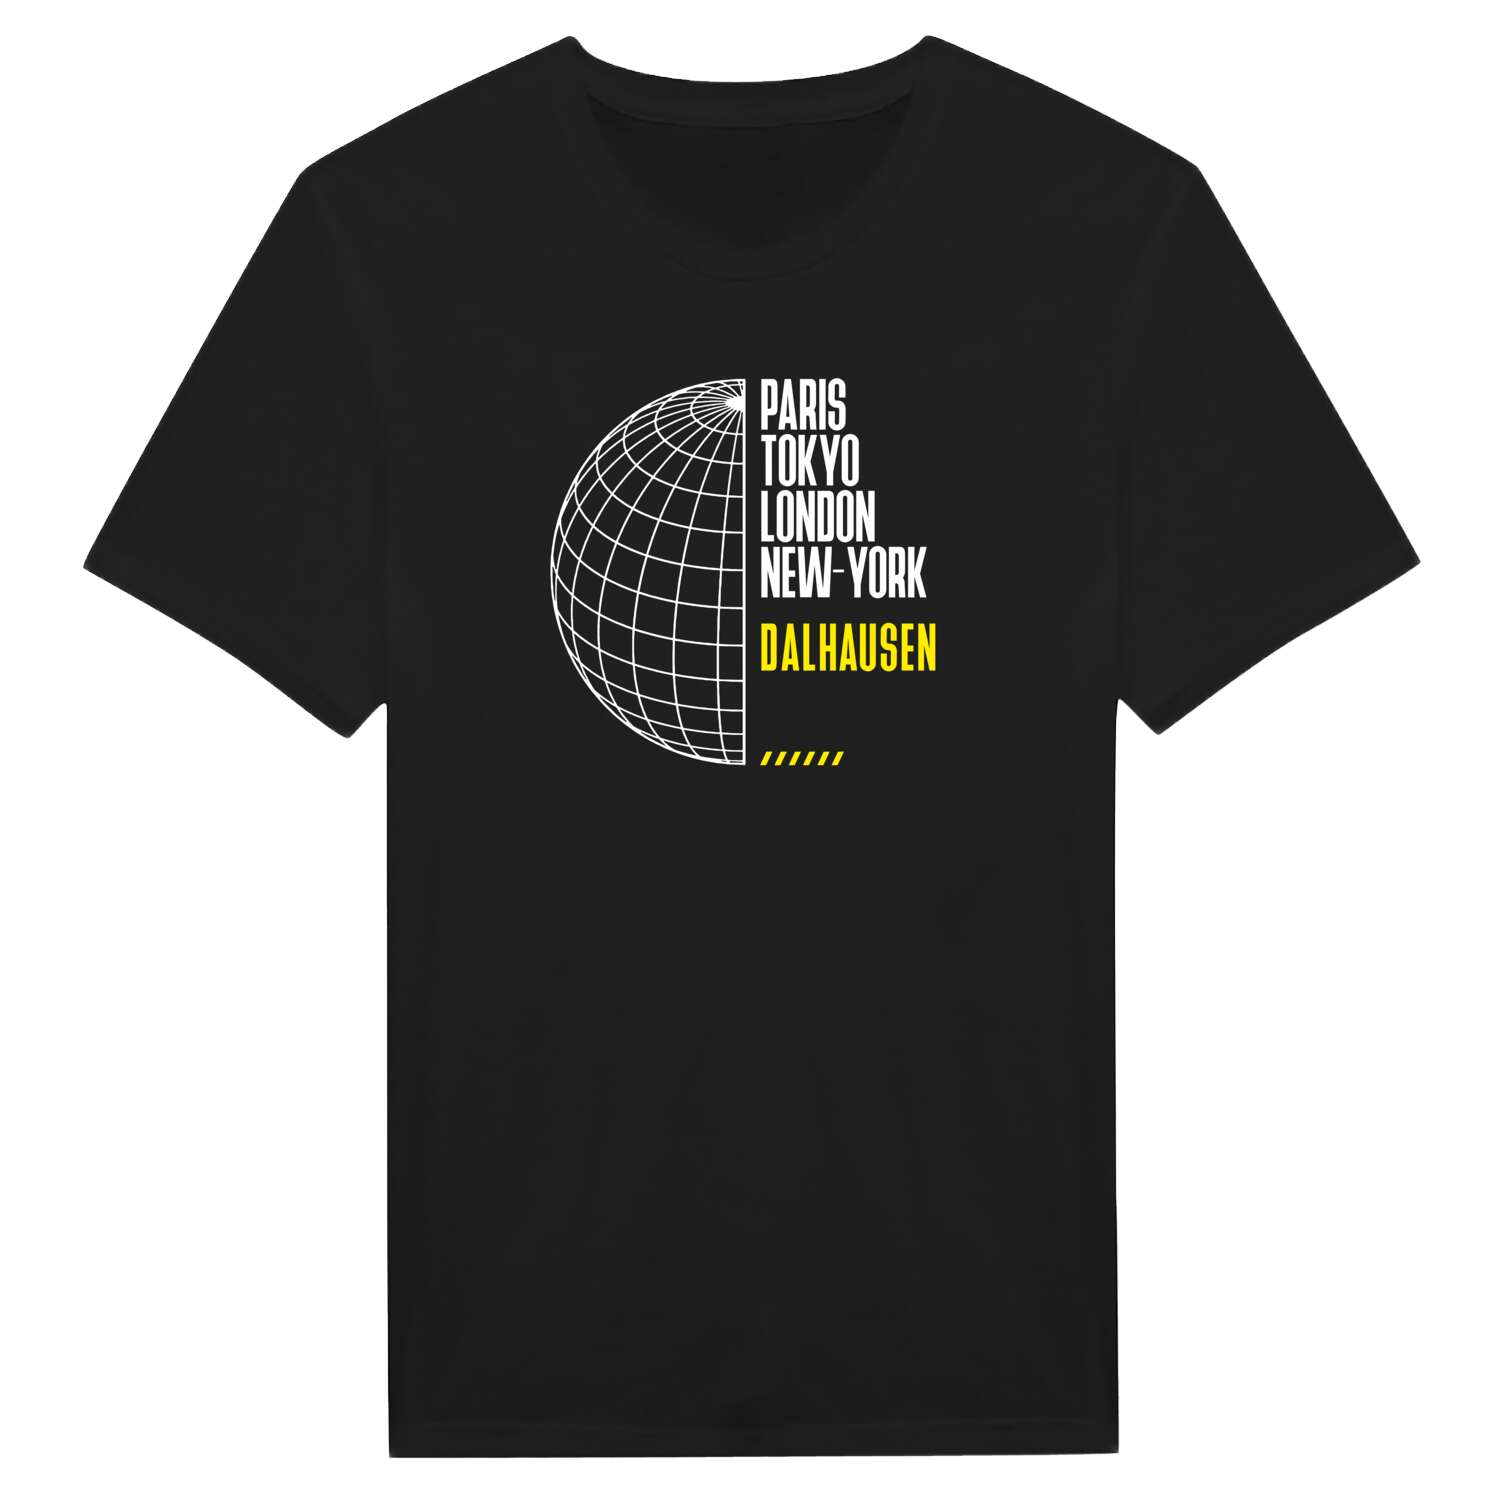 Dalhausen T-Shirt »Paris Tokyo London«